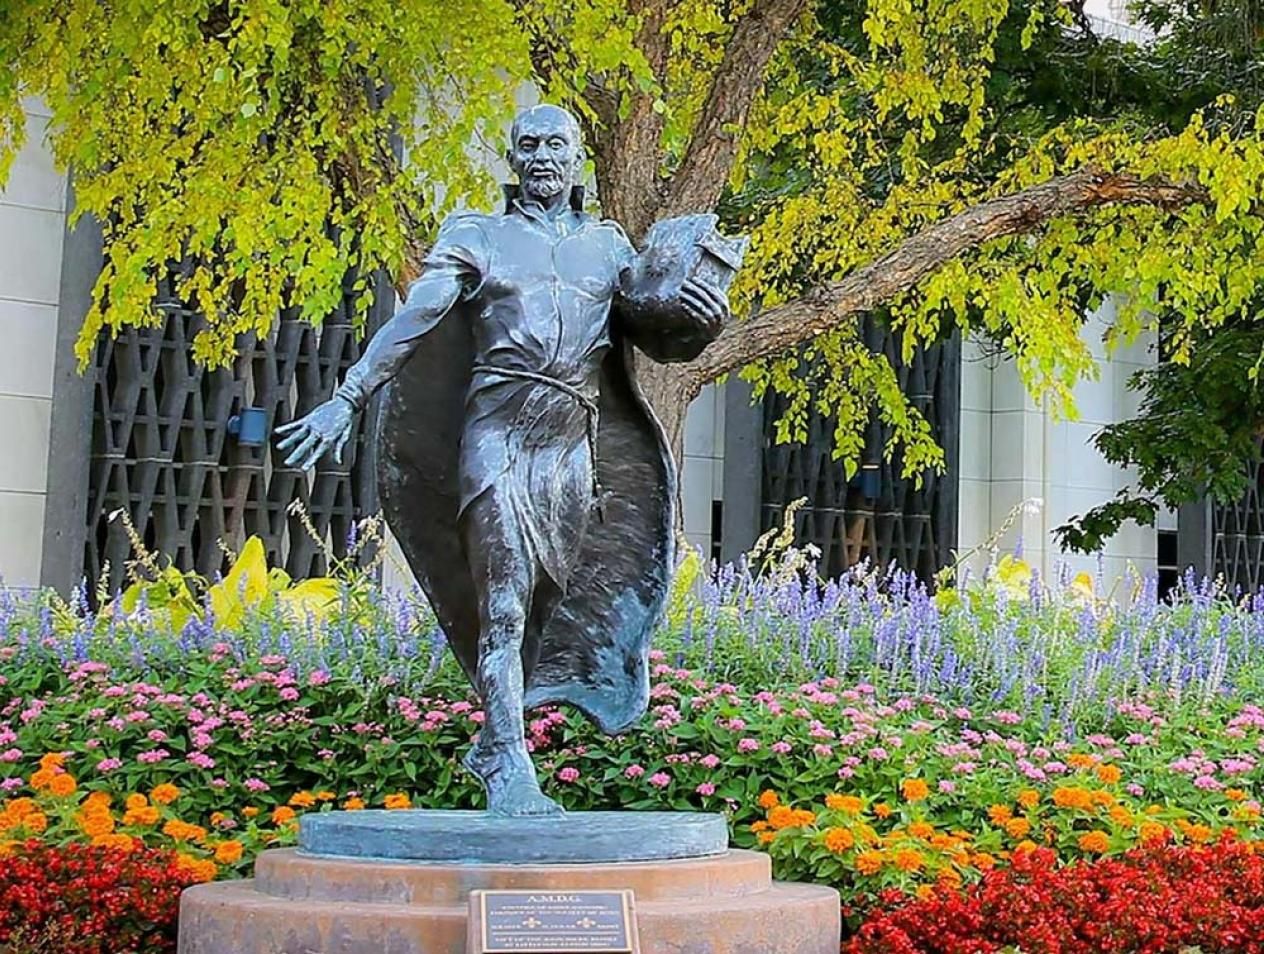 St. Ignatius statue on Creighton campus